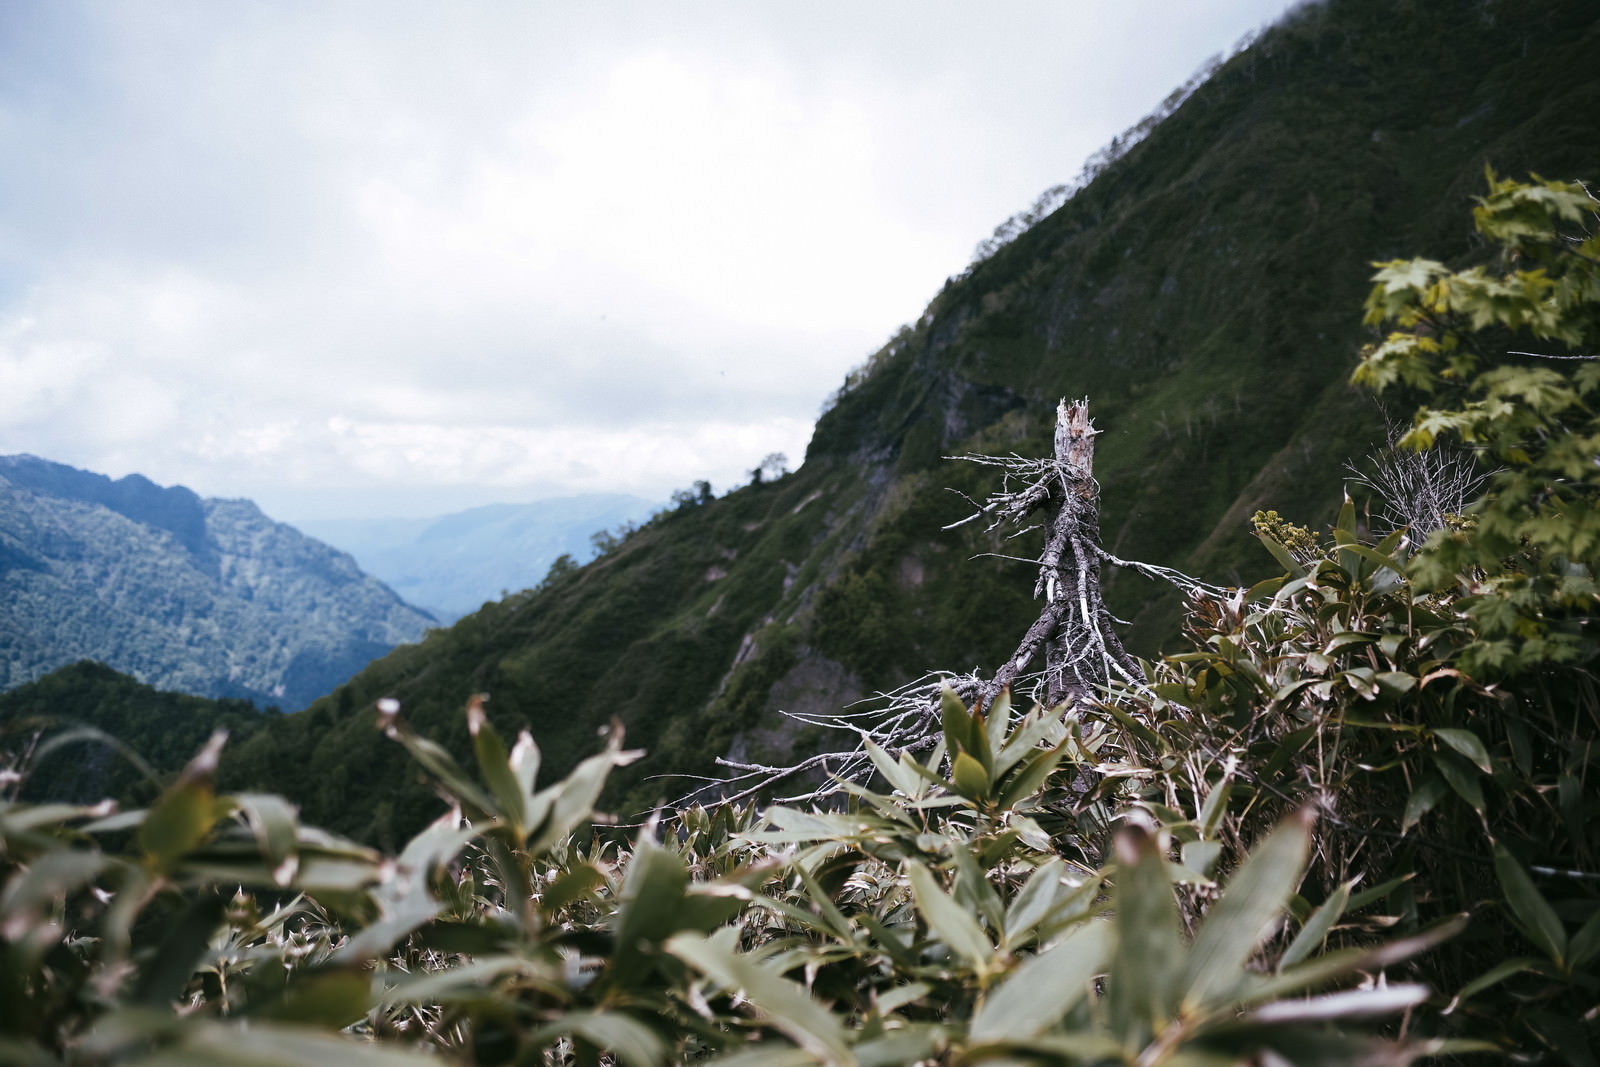 「枯れた木が立ち続ける笹に包まれた高妻山斜面 | フリー素材のぱくたそ」の写真